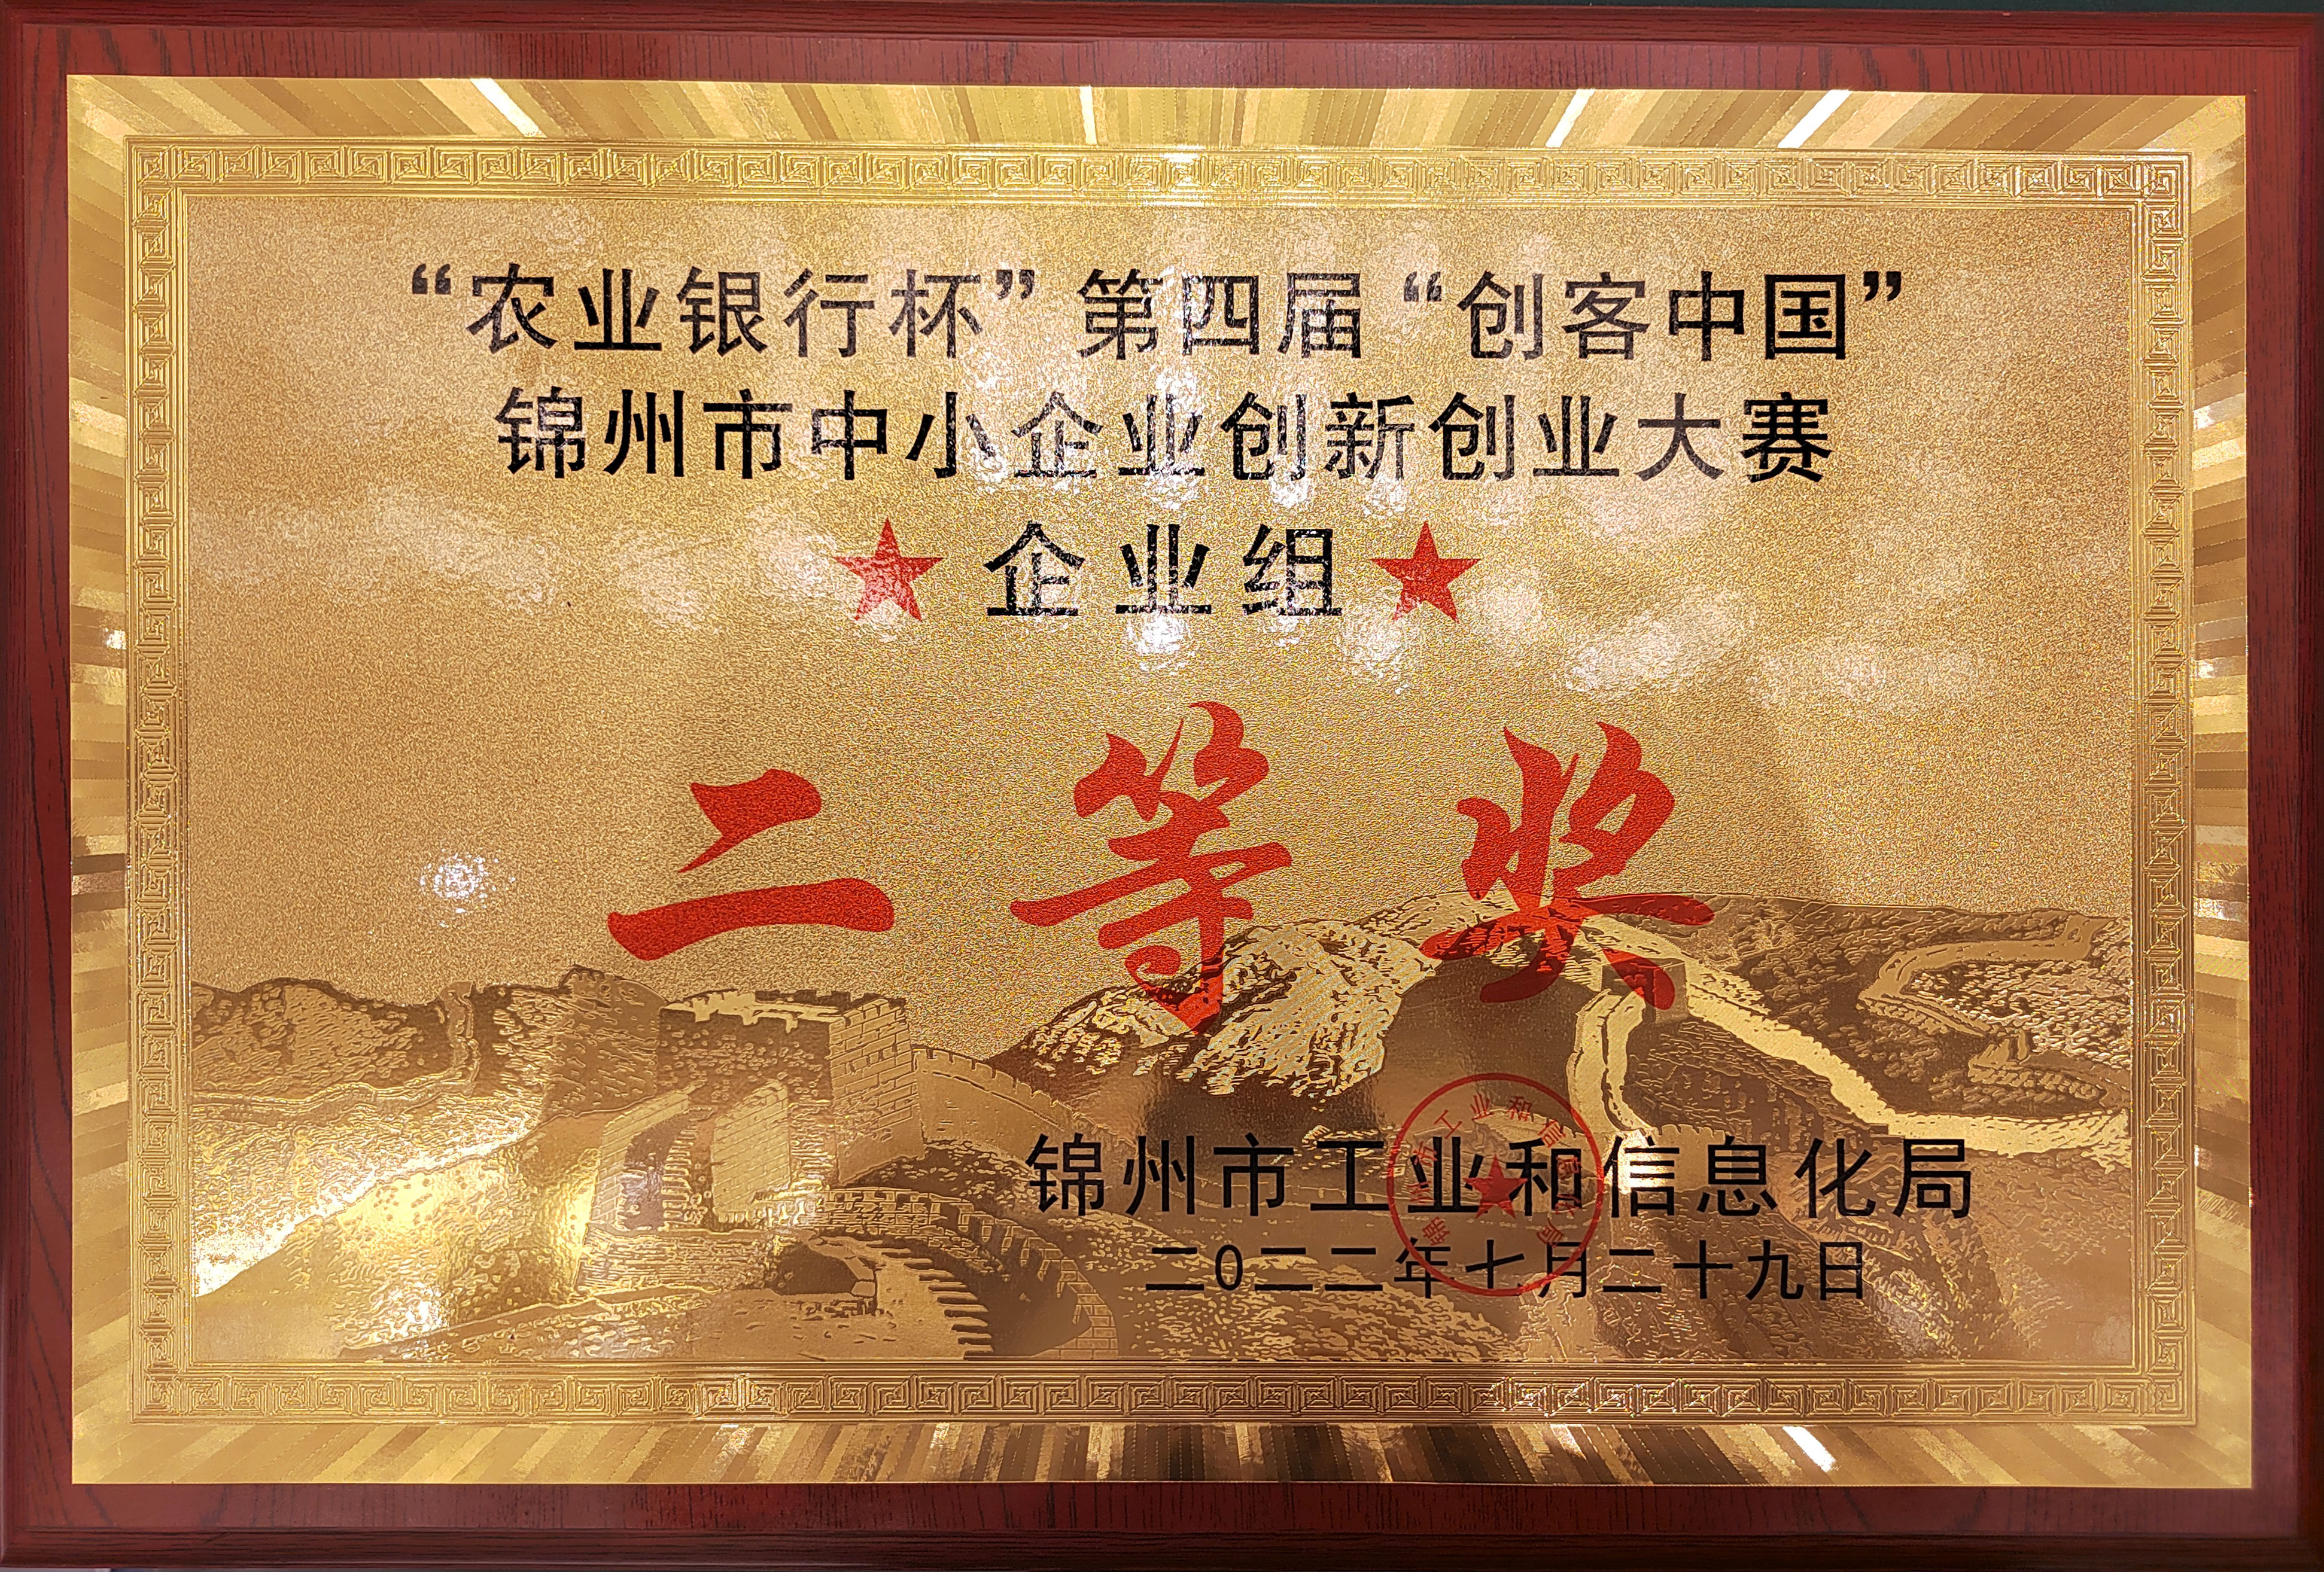 第四屆“創客中國”錦州市大賽圓滿收官 集信高溫以市賽第二名的成績直通遼寧省決賽